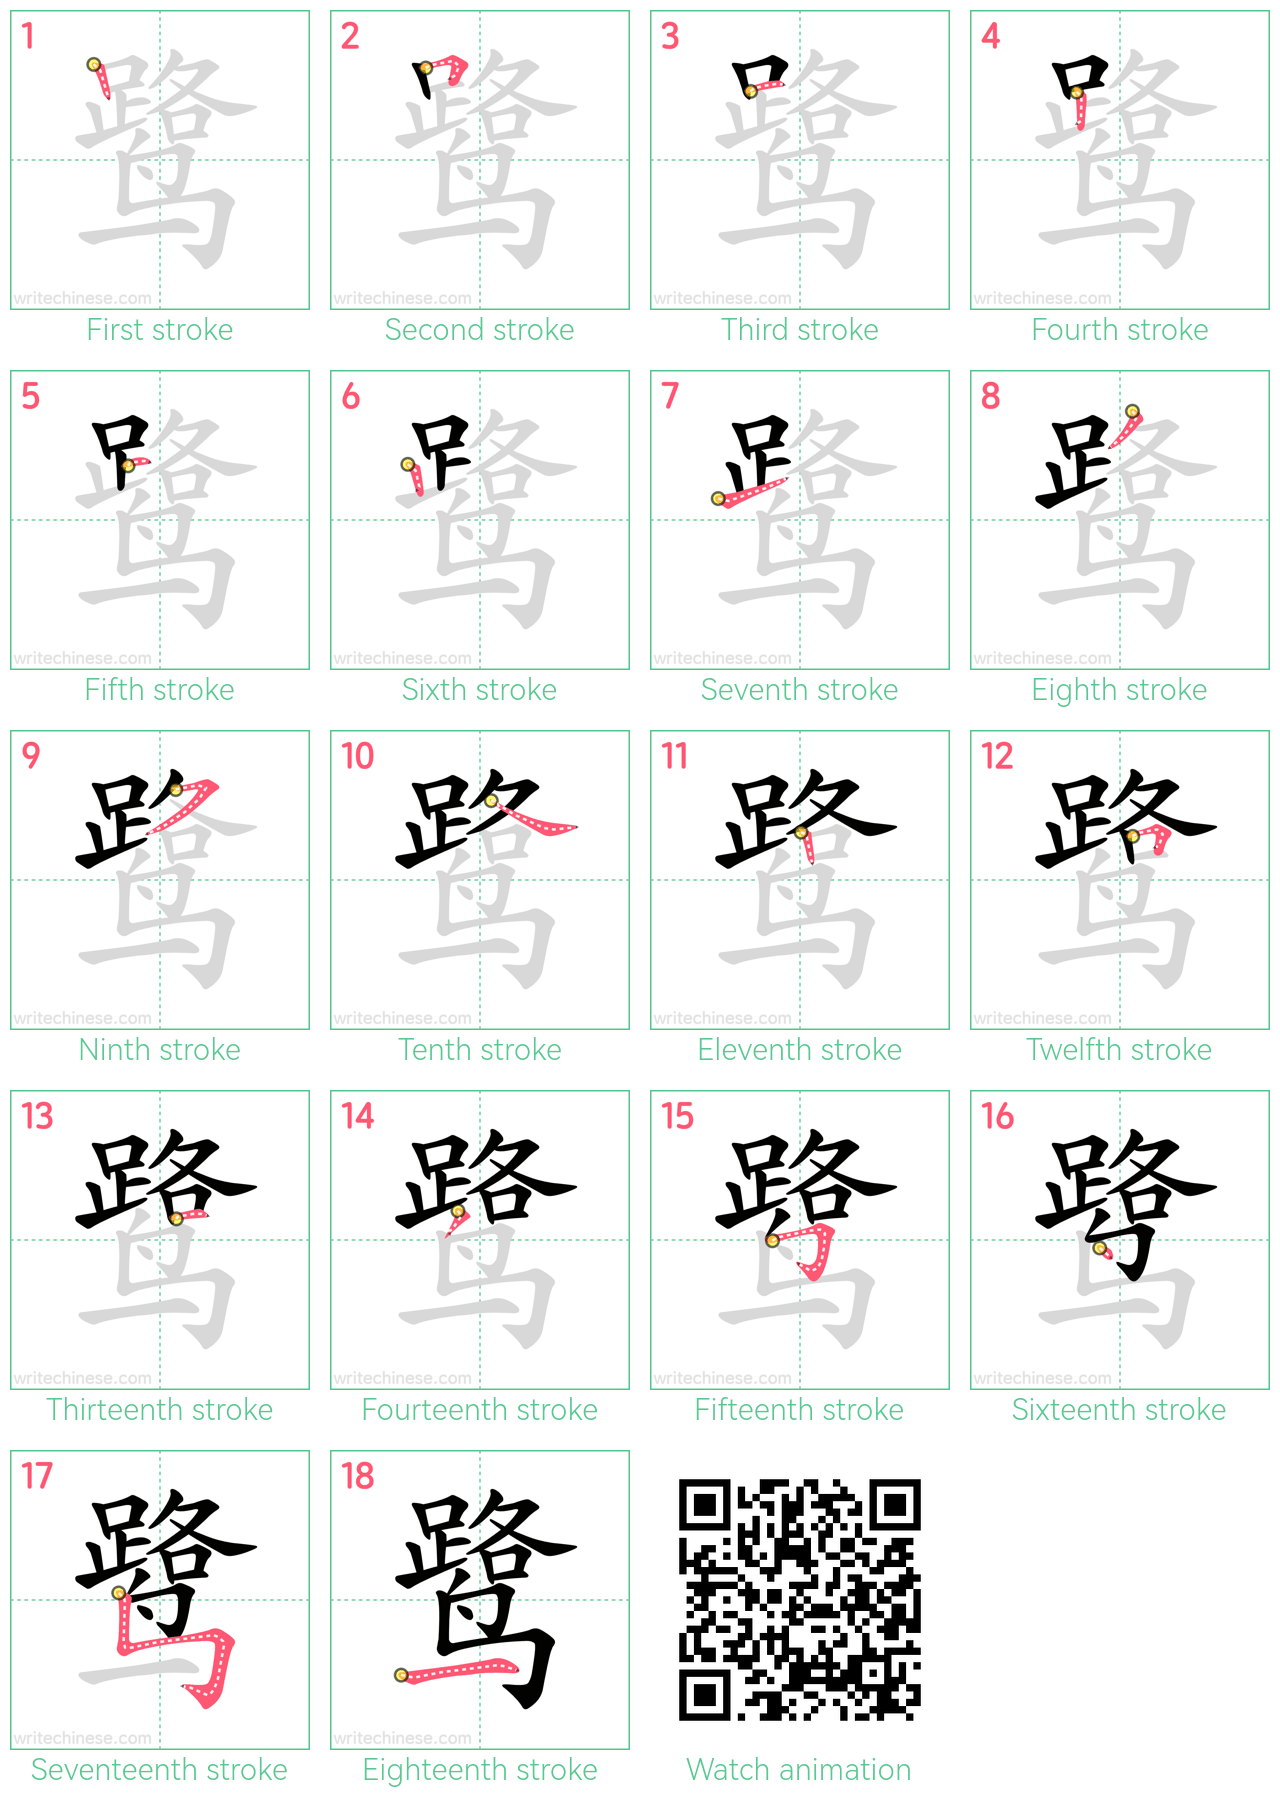 鹭 step-by-step stroke order diagrams